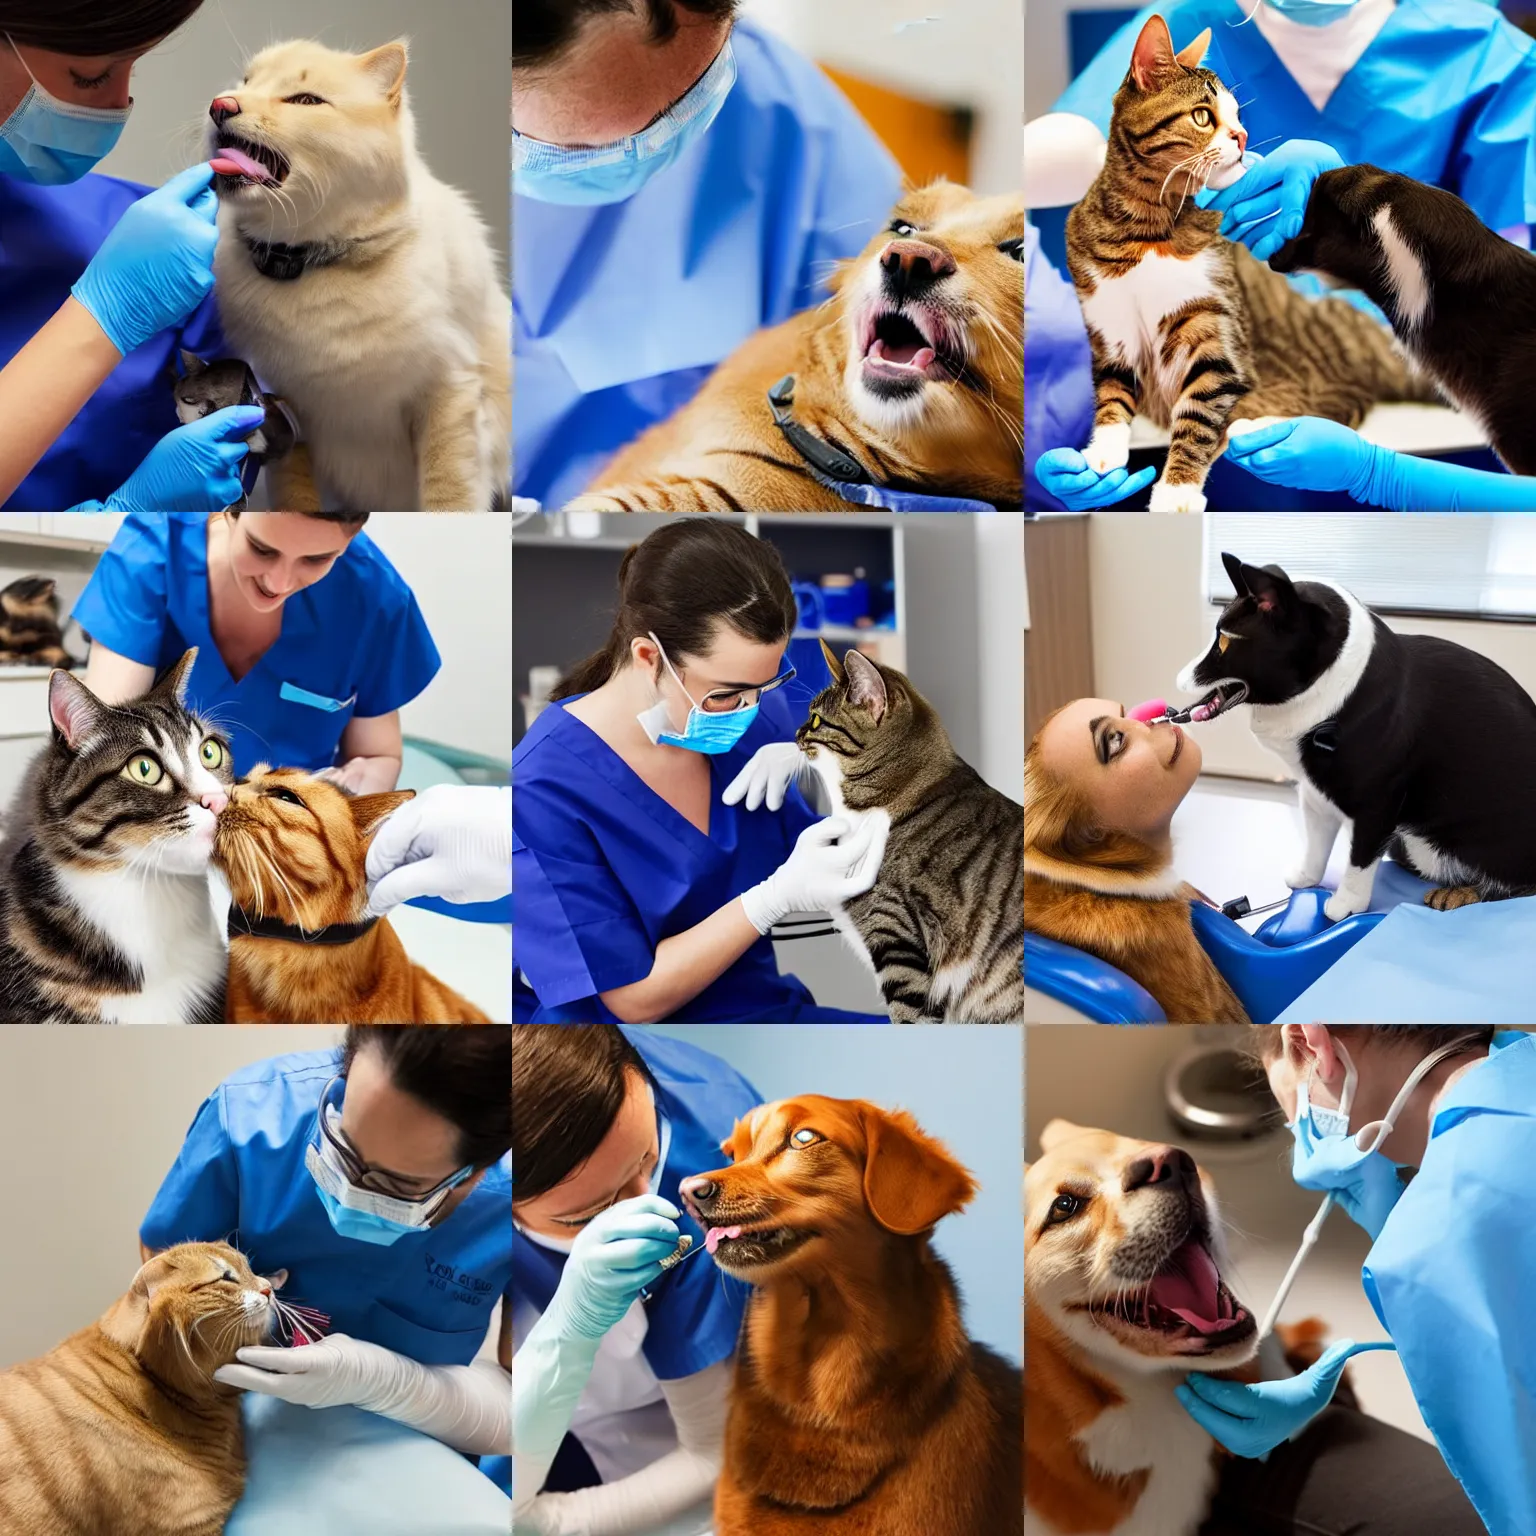 Prompt: A cat dentist treats a dog patient